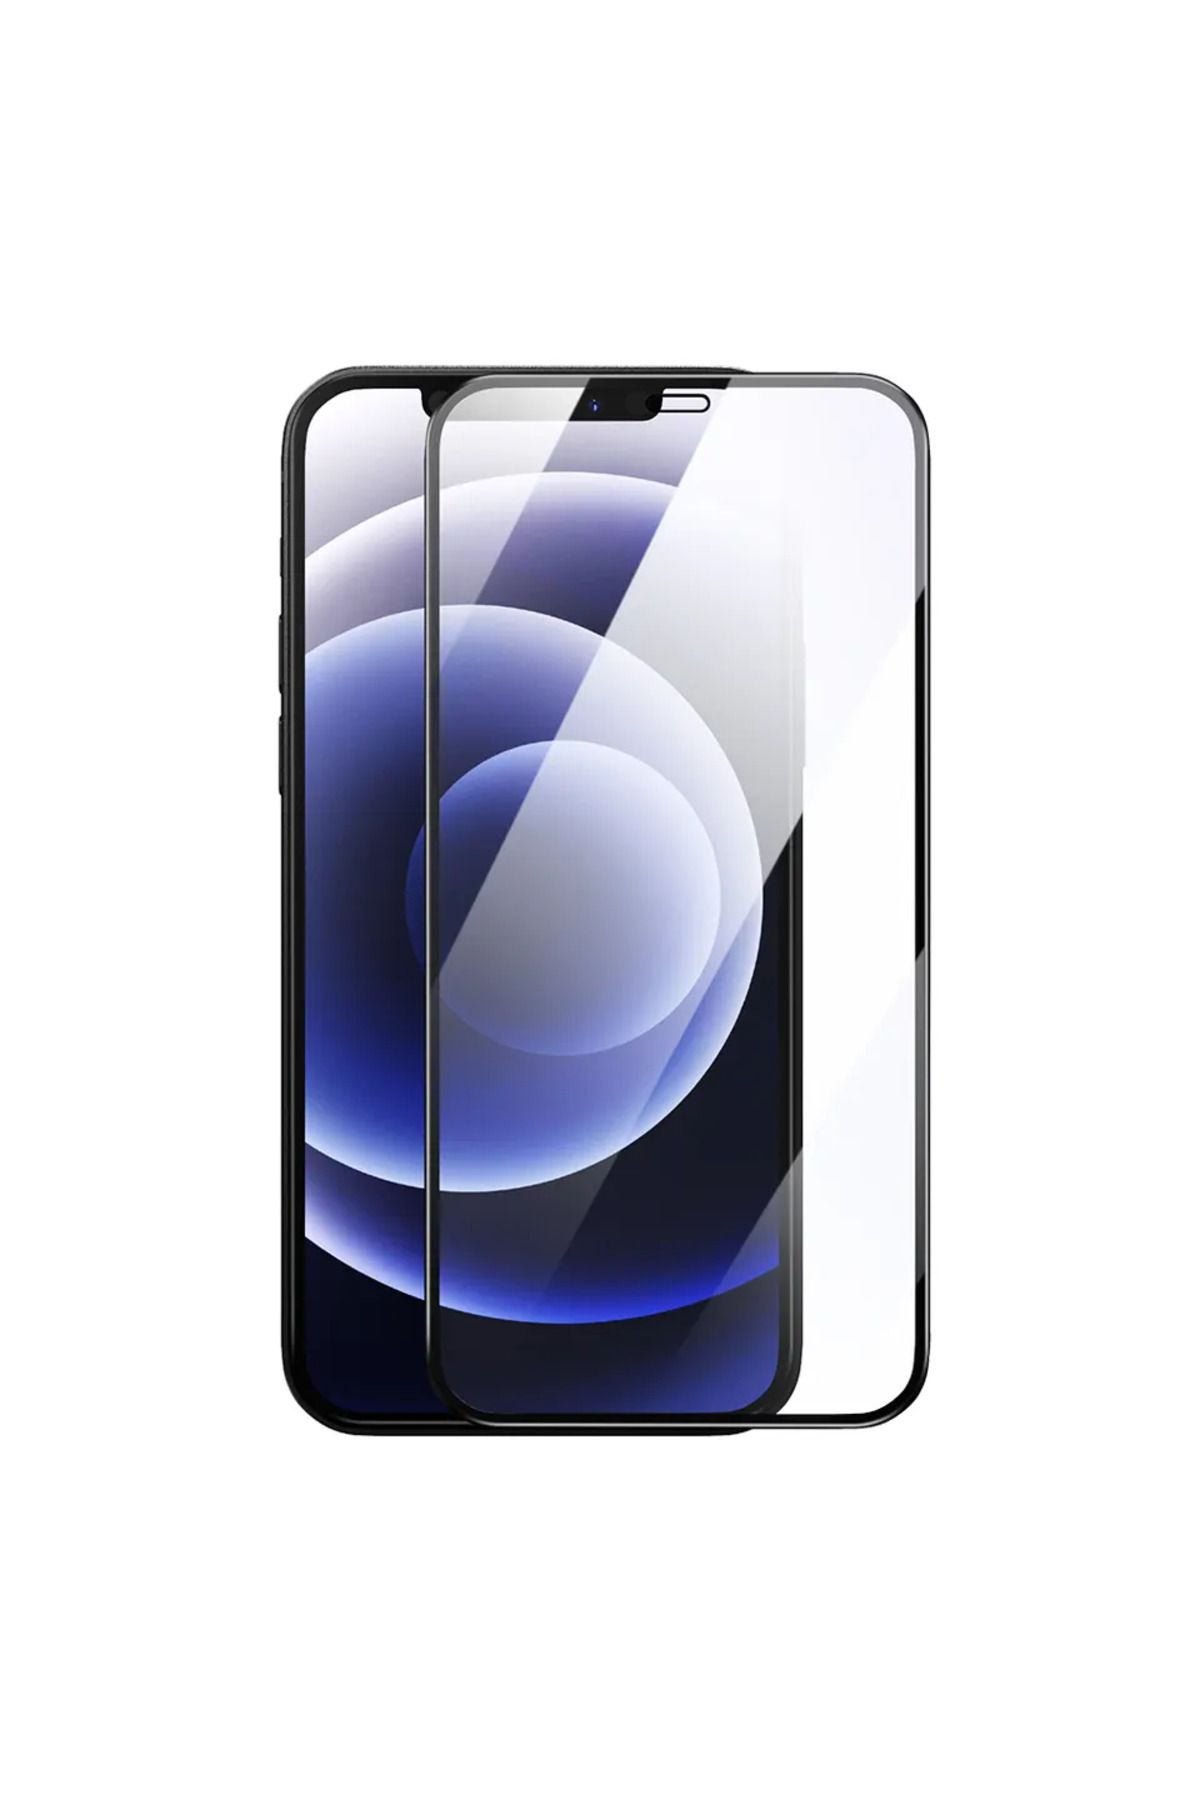 SKV MOBILE Iphone 11 Promax Og Glass Ekran Koruyucu Kırılmaz Cam Ultra Kalınlık 0.4mm